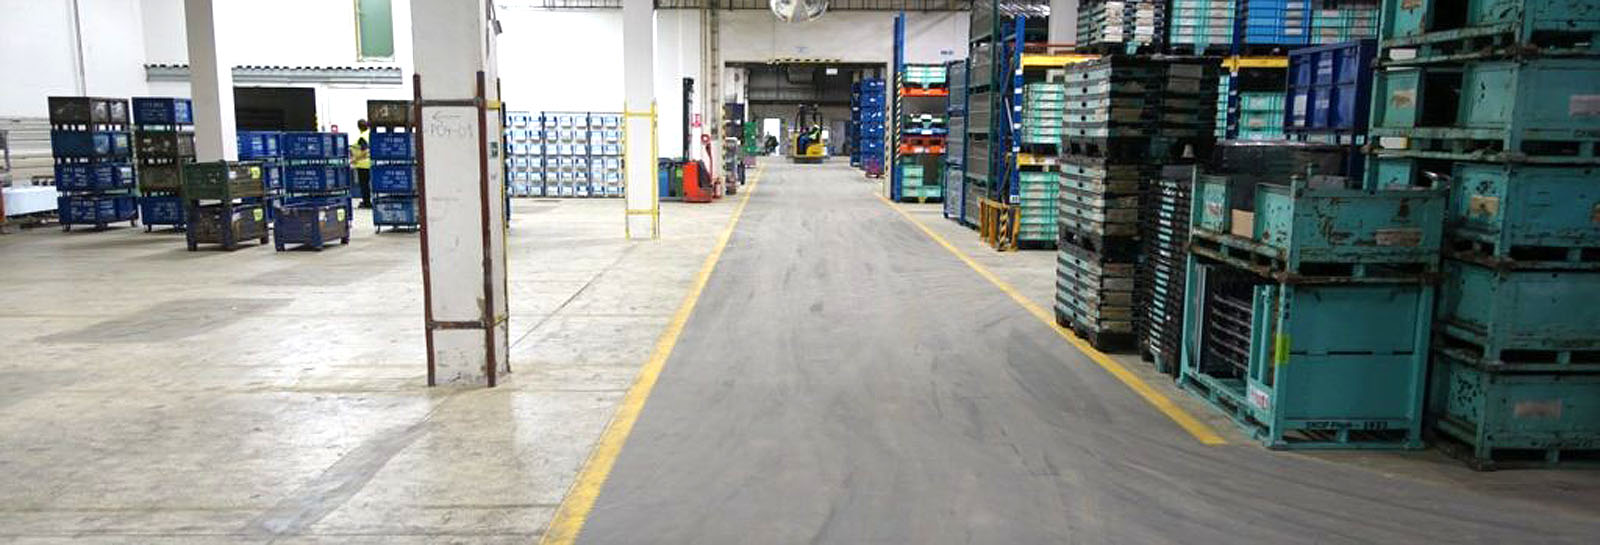 Industrie- und Lagerbereiche mit PVC-Boden-Fliesen im Industrie-Standard